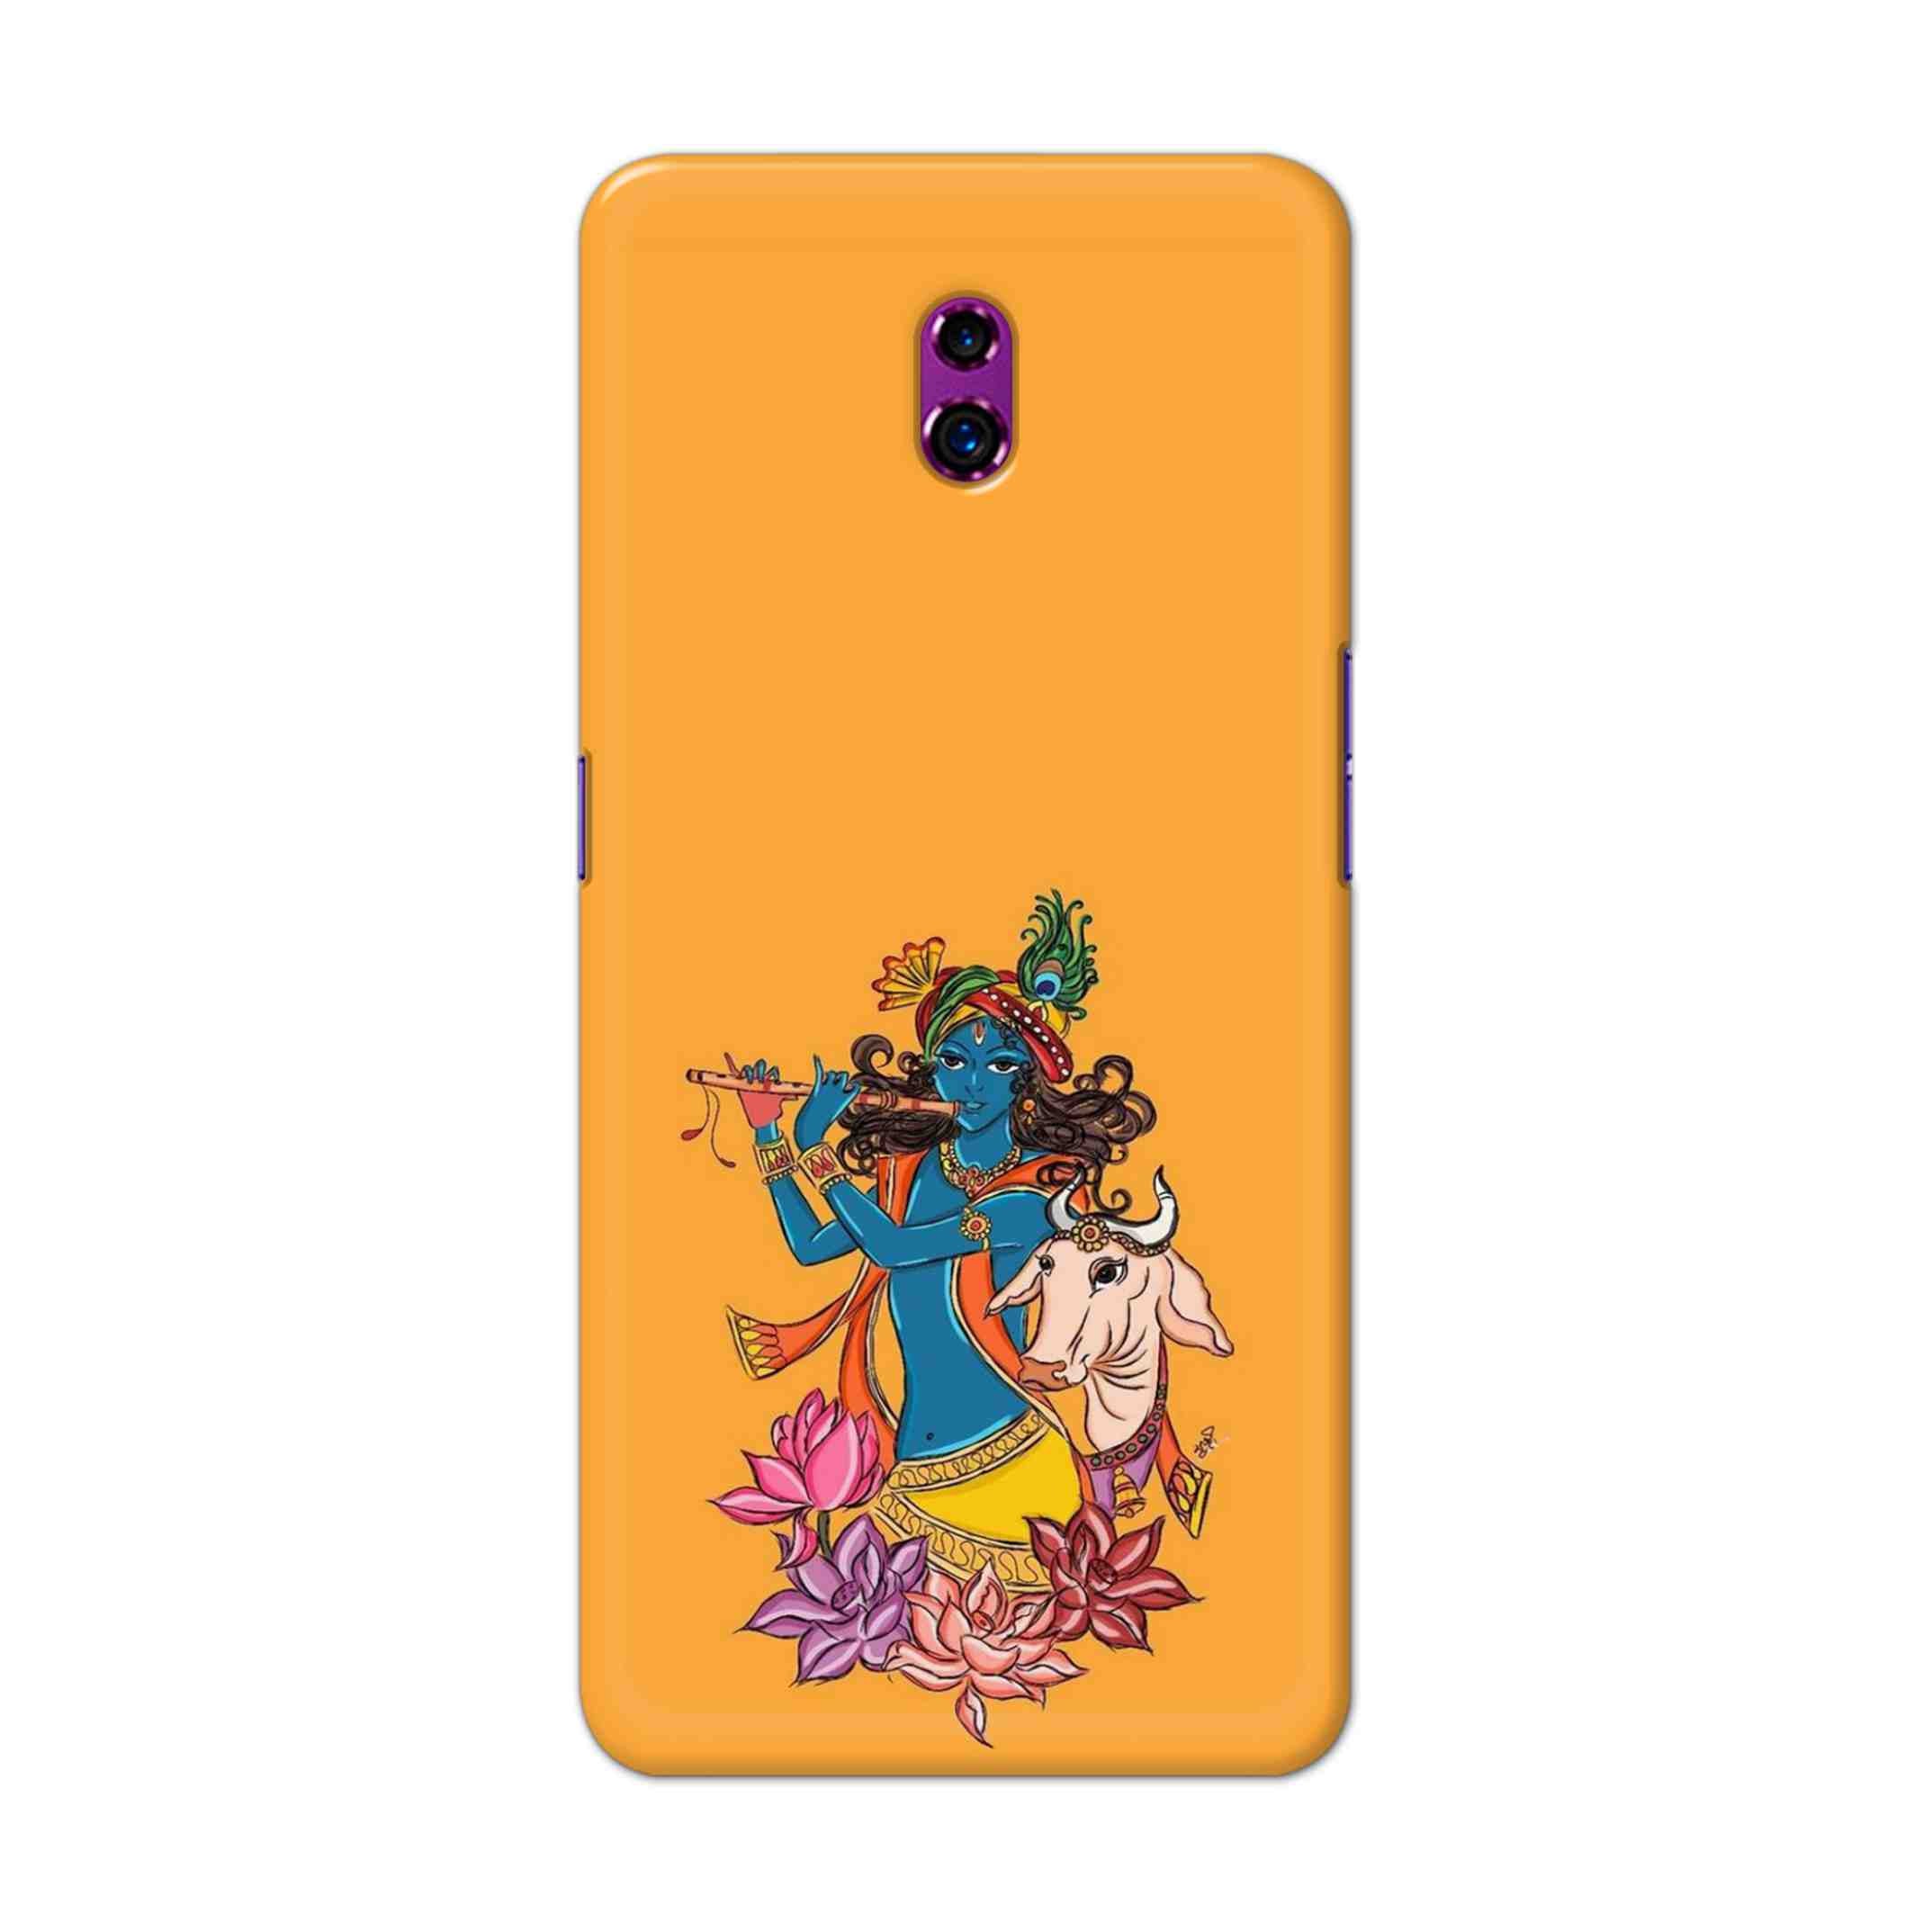 Buy Radhe Krishna Hard Back Mobile Phone Case Cover For Oppo Reno Online